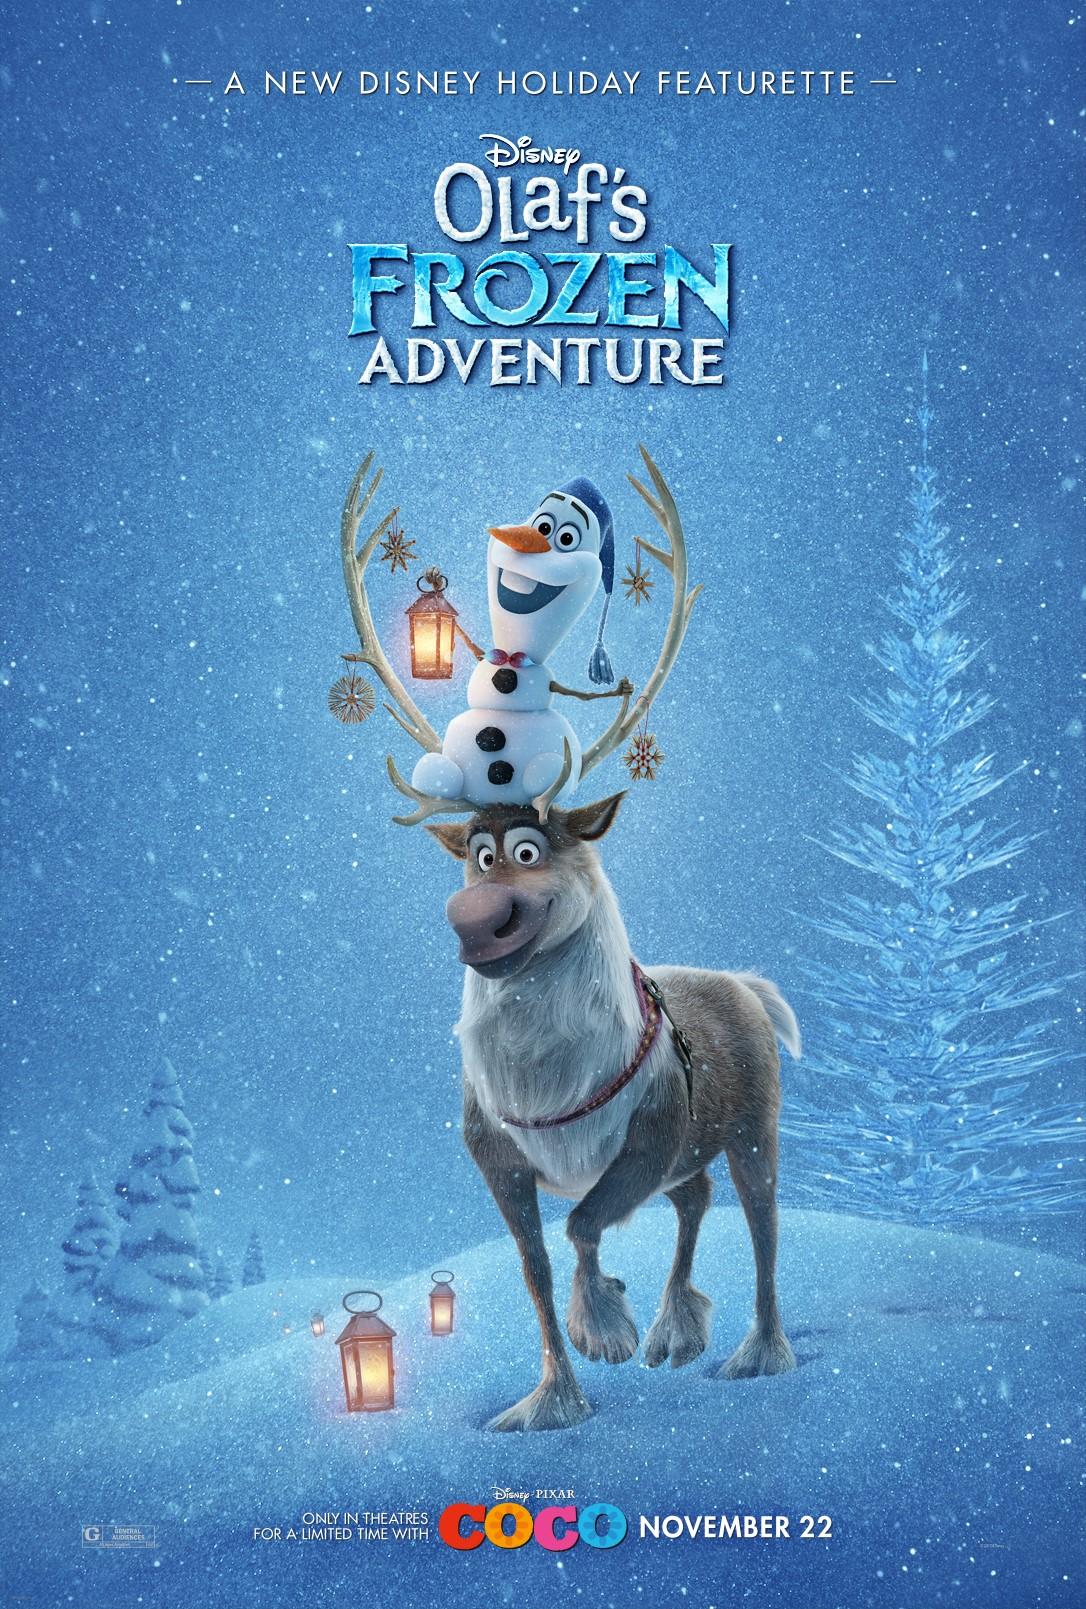 Постер фильма Олаф и холодное приключение | Olaf's Frozen Adventure